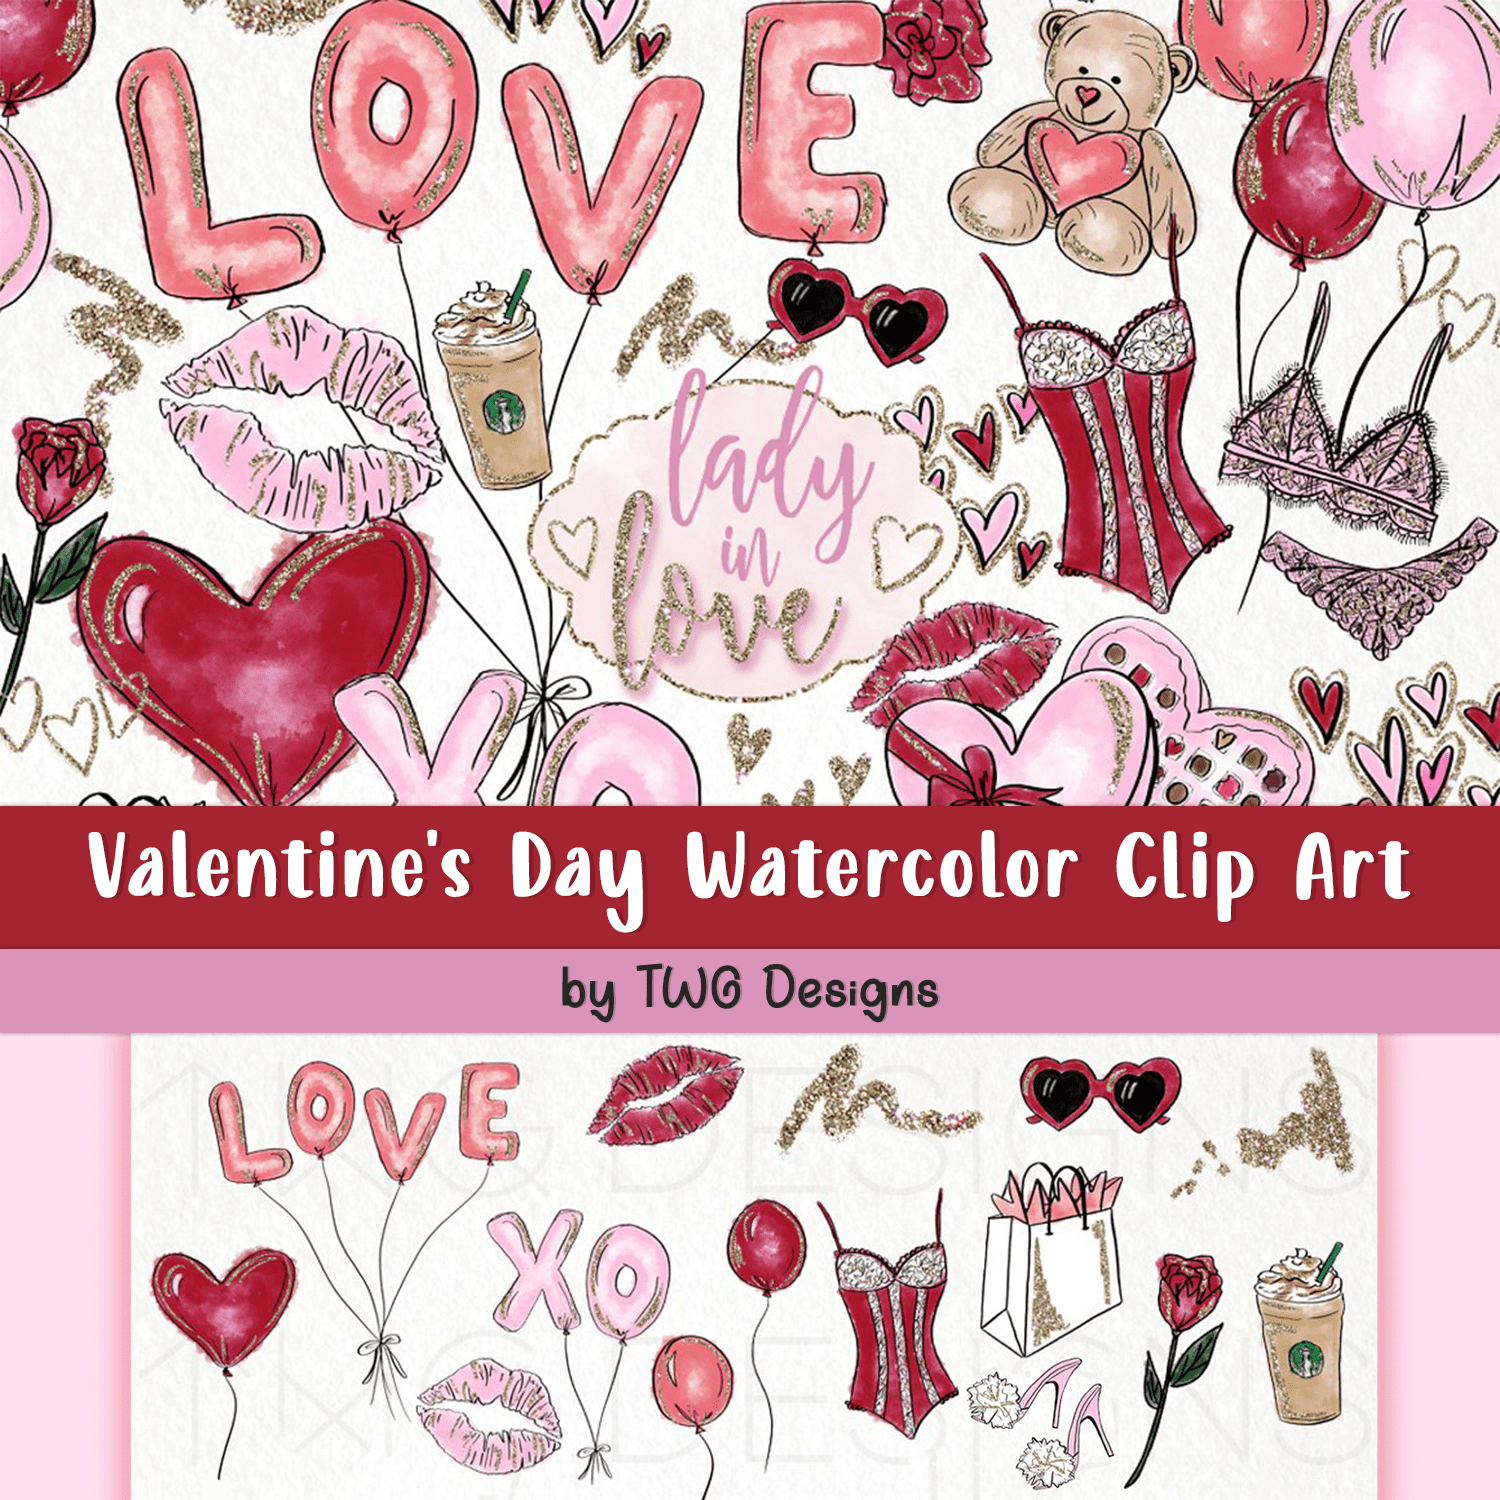 Valentine's Day Watercolor Clip Art cover.